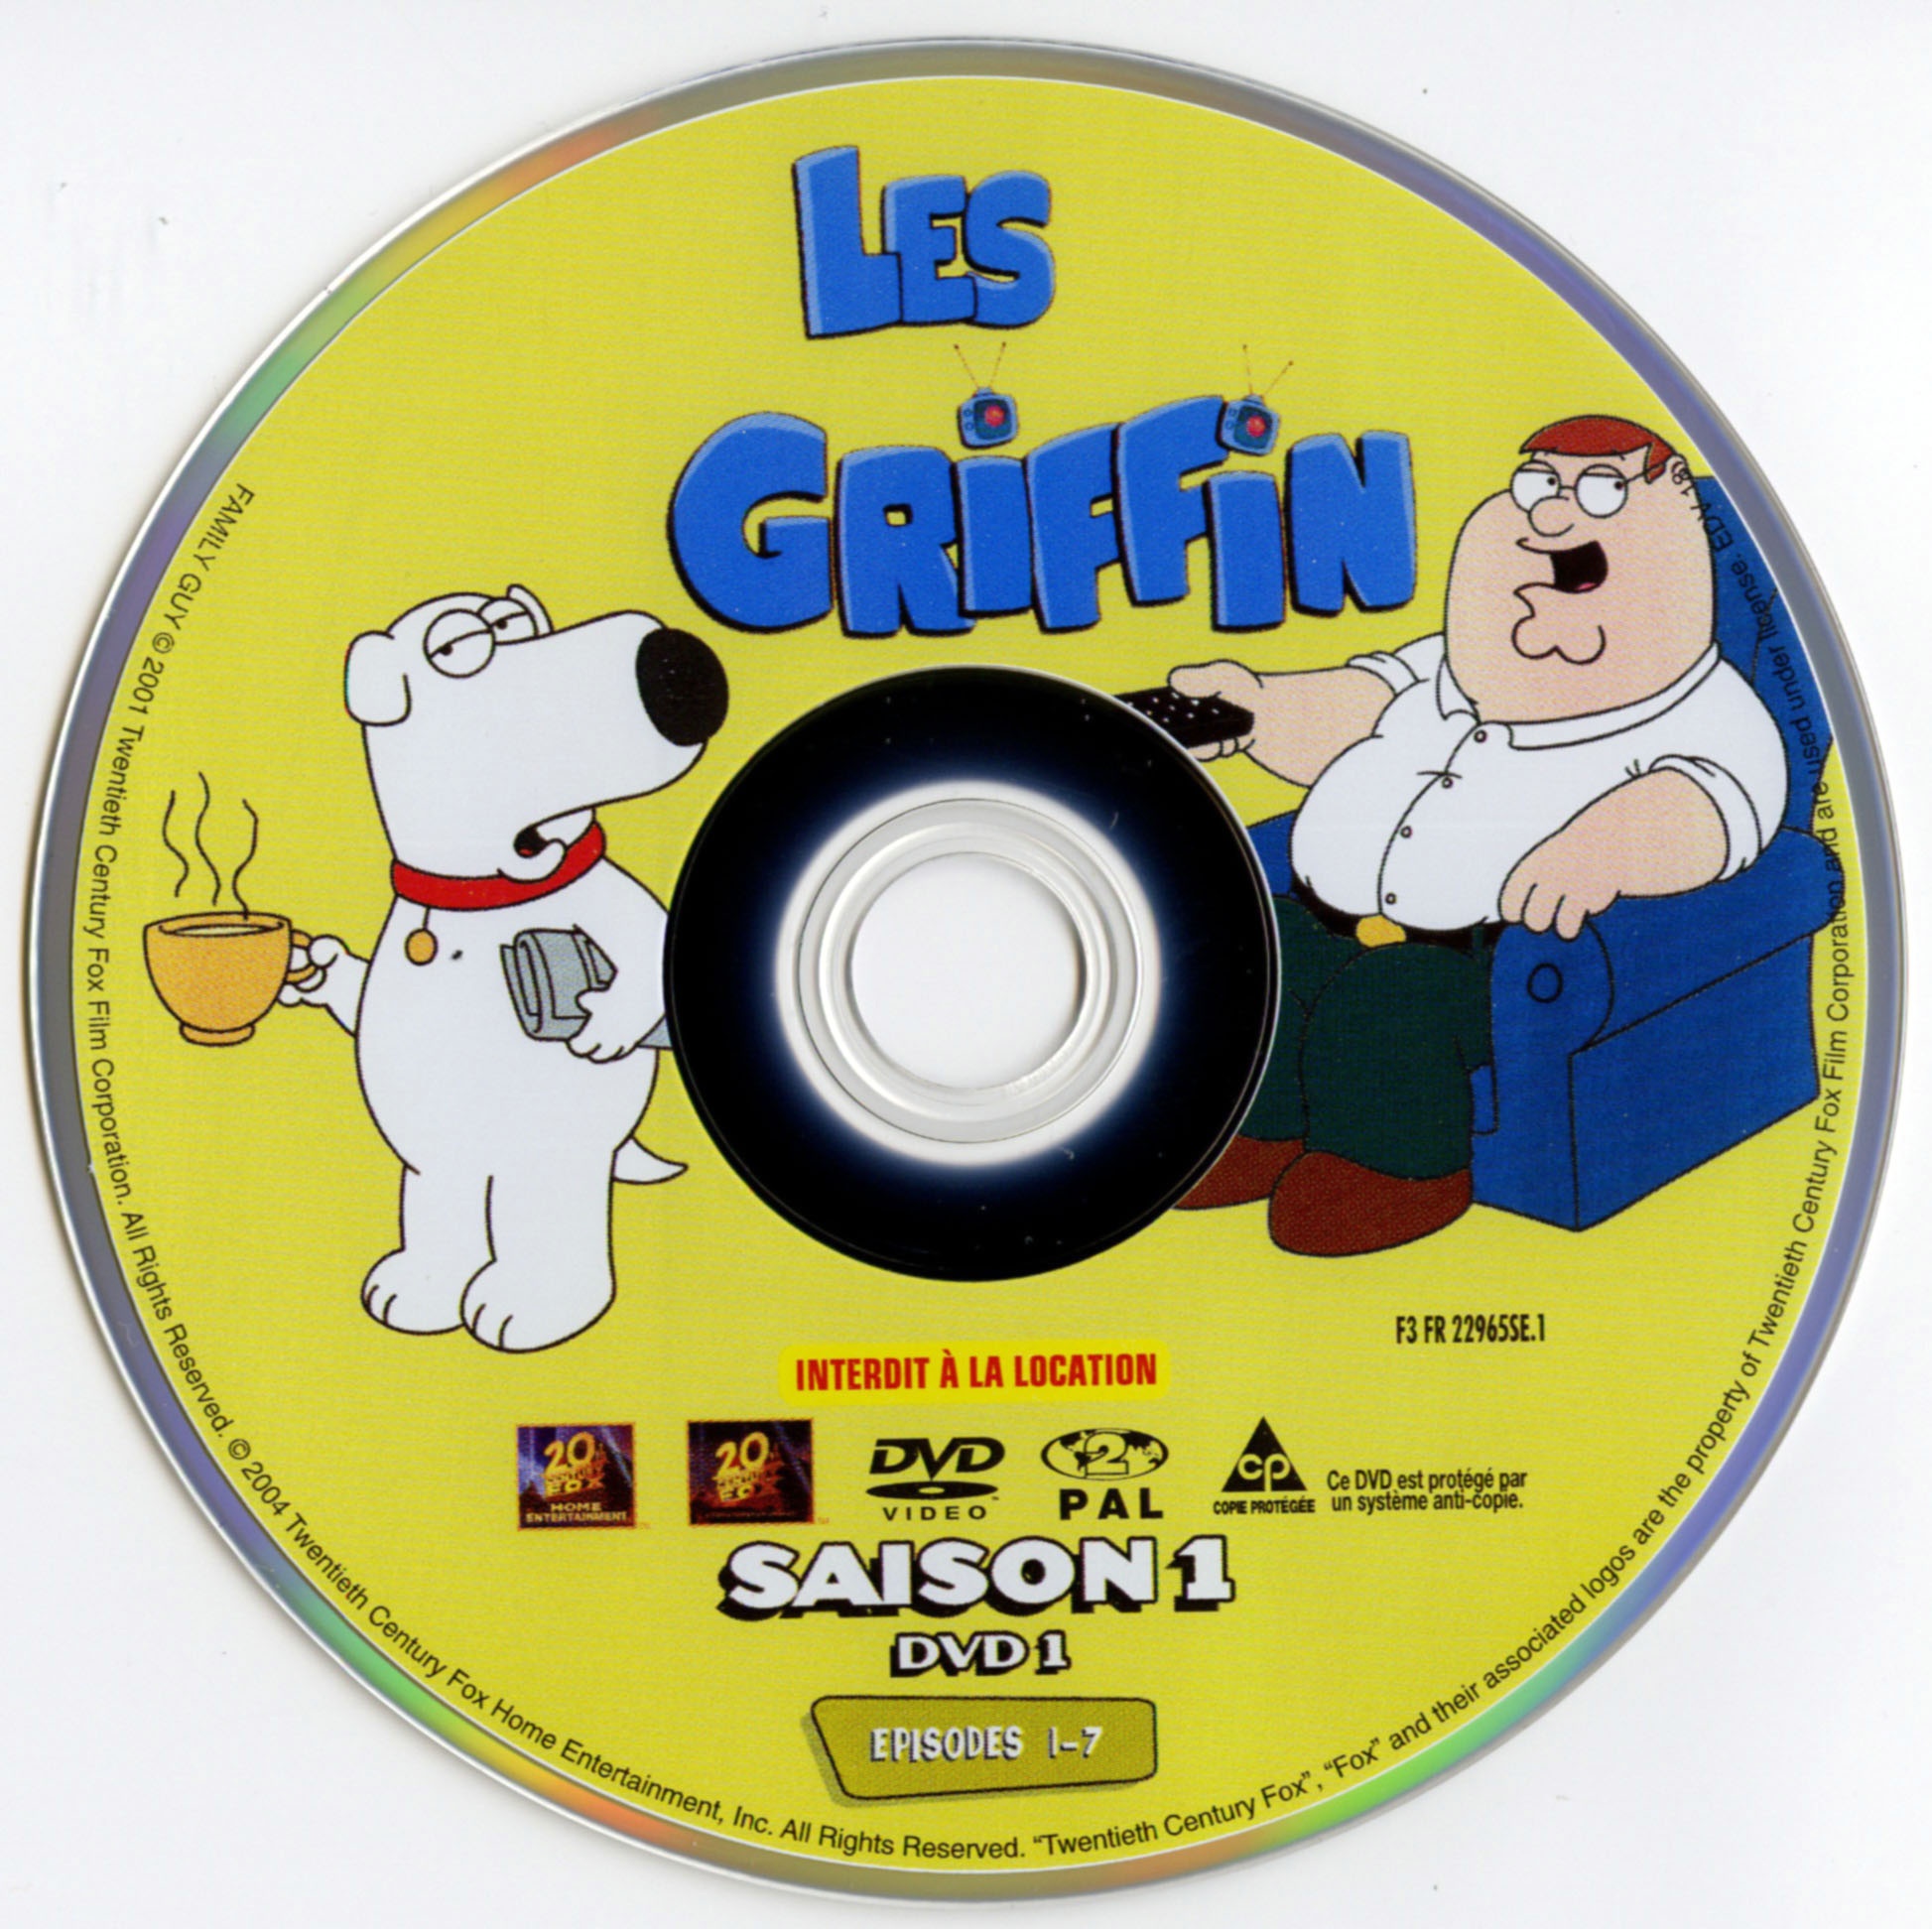 Les griffin saison 1 DISC 1